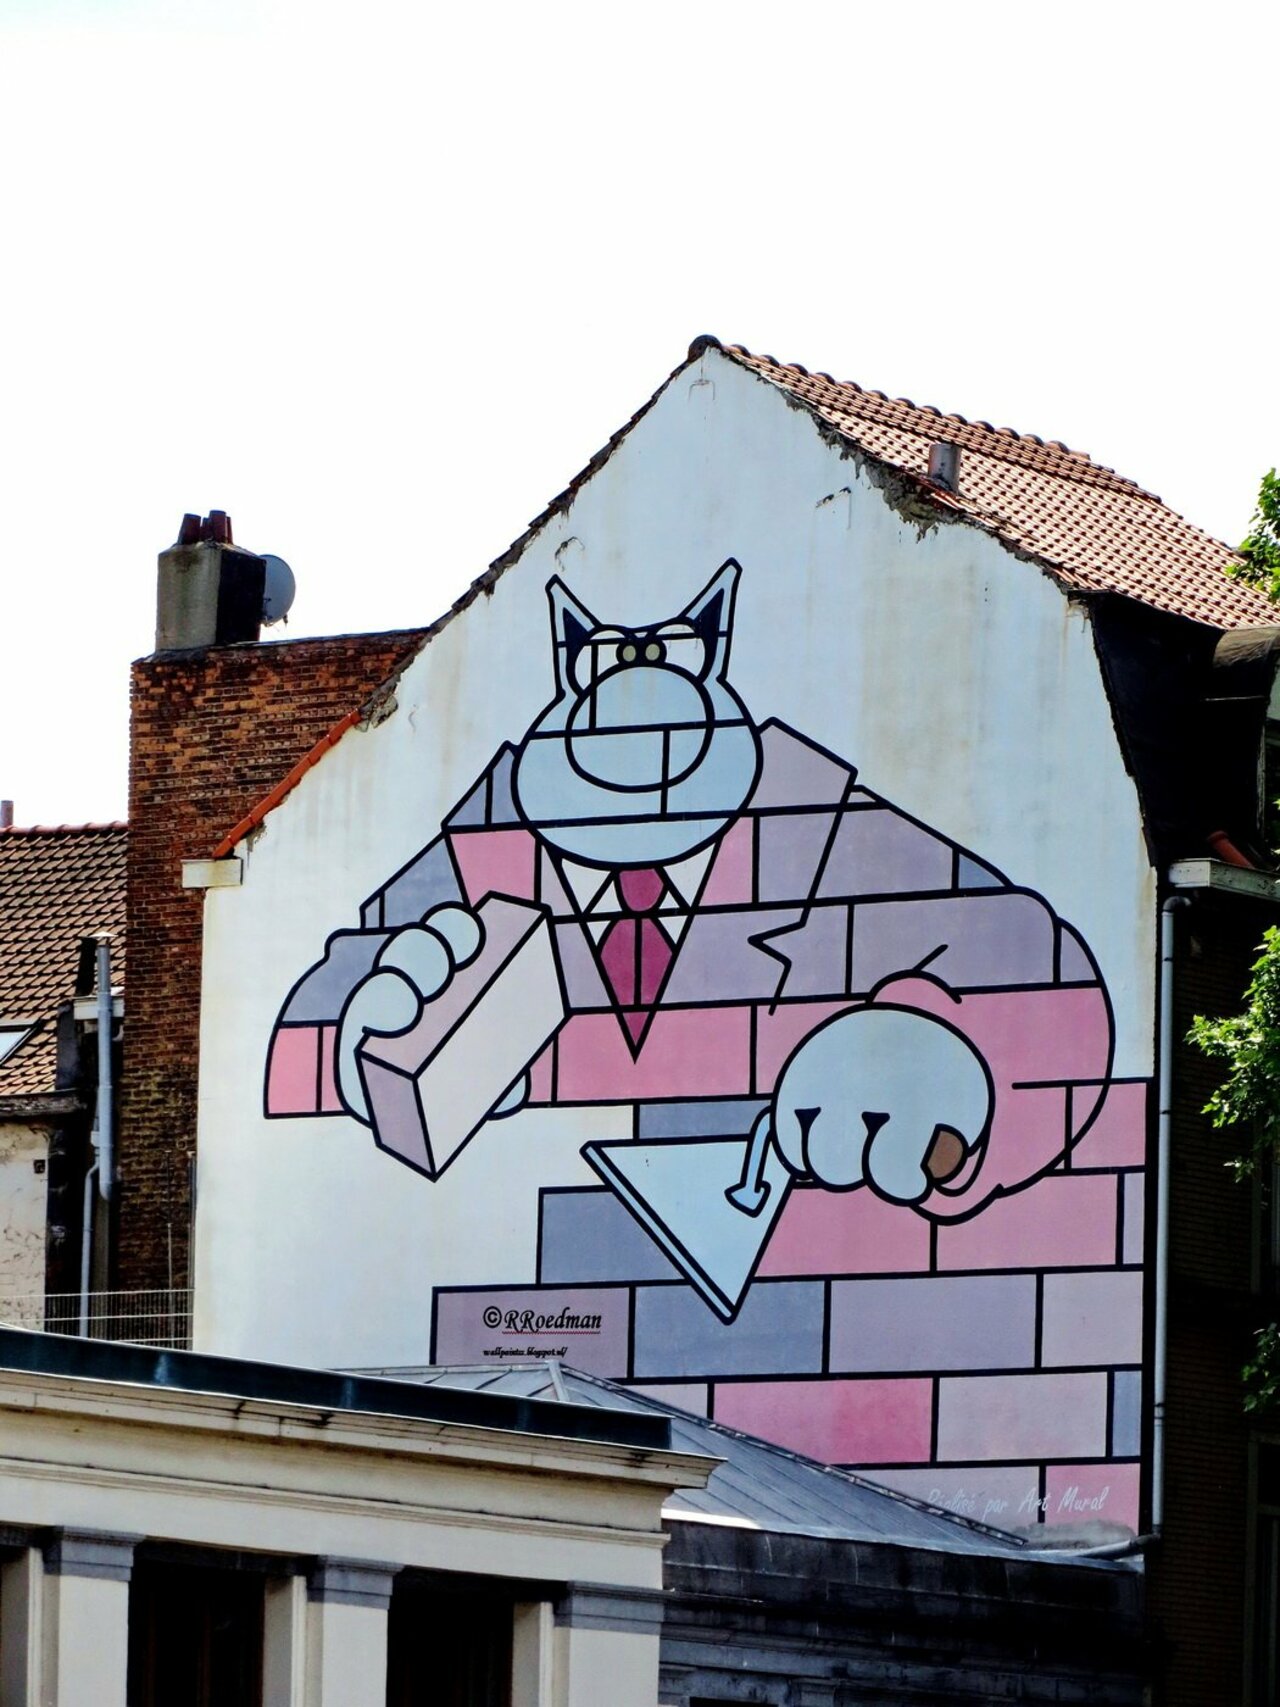 RT @RRoedman: #streetart #graffiti #mural #cartoon in #Brussel from #Geluck de kat ,2 pics at http://wallpaintss.blogspot.nl https://t.co/FuZutb8LWV